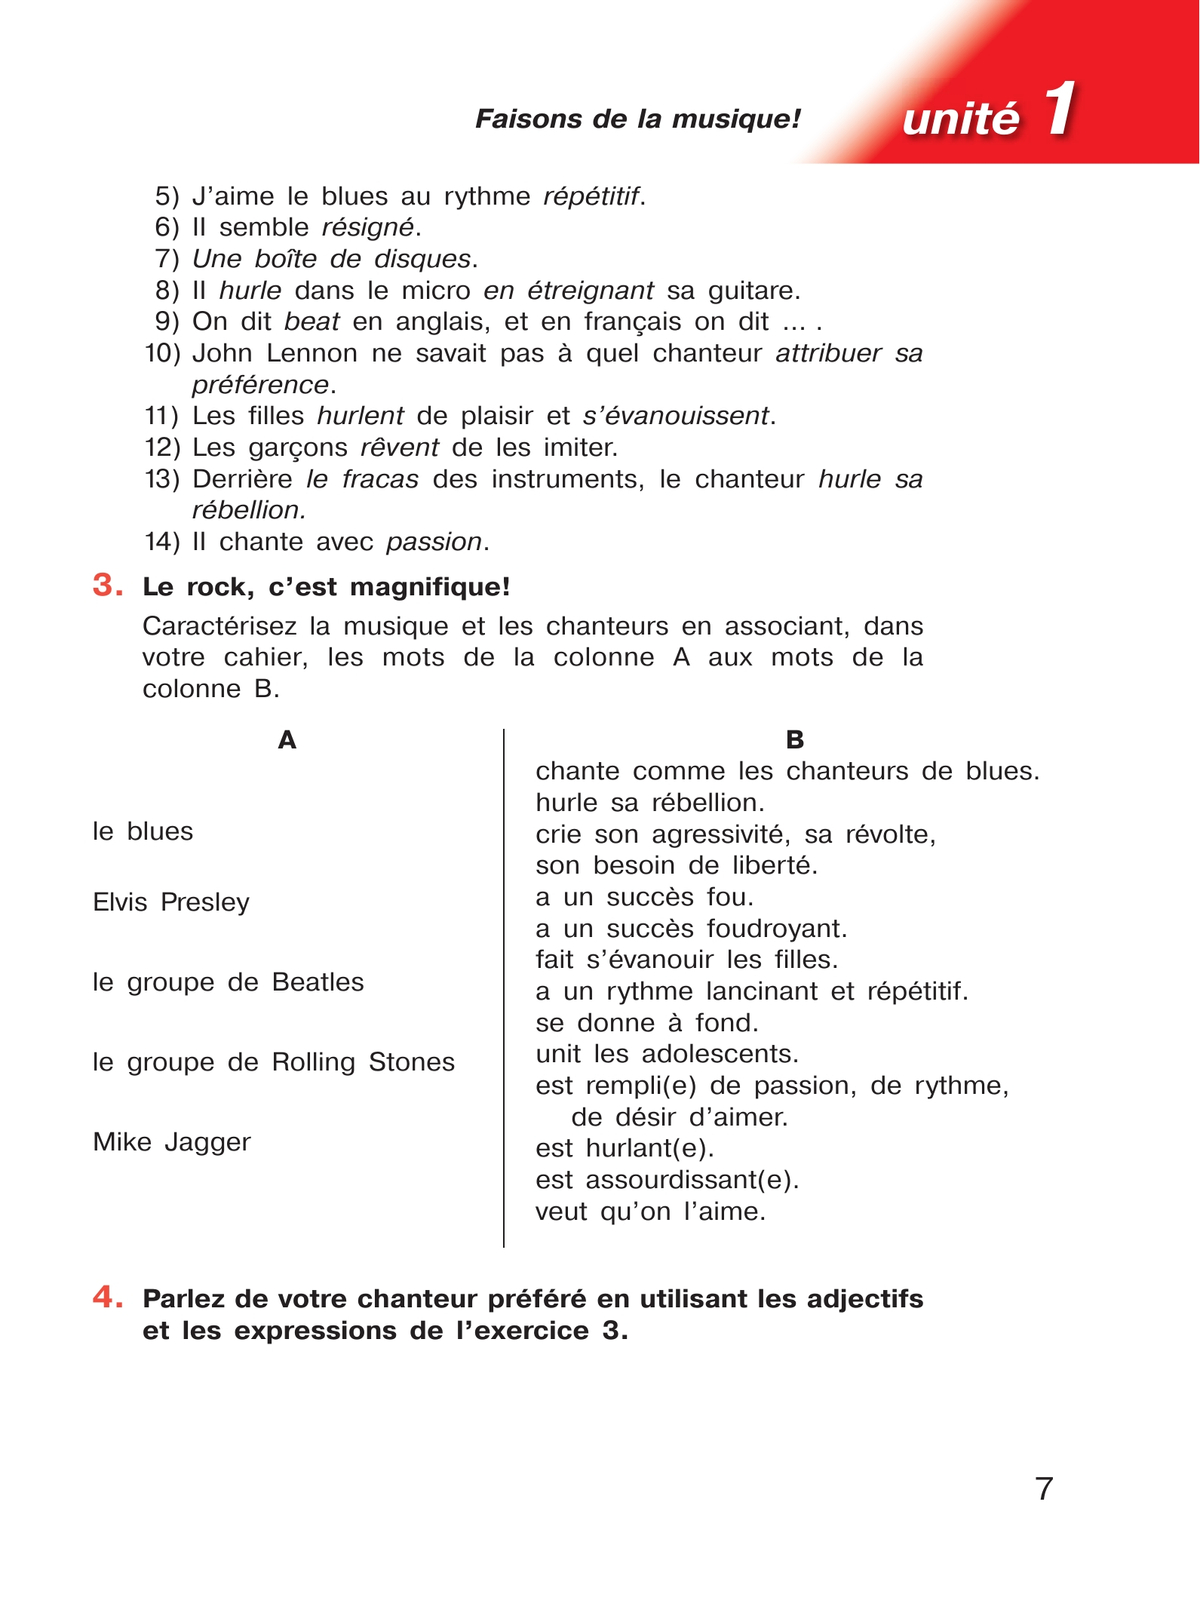 Французский язык. Второй иностранный язык. 11 класс. Учебник. Базовый уровень 2